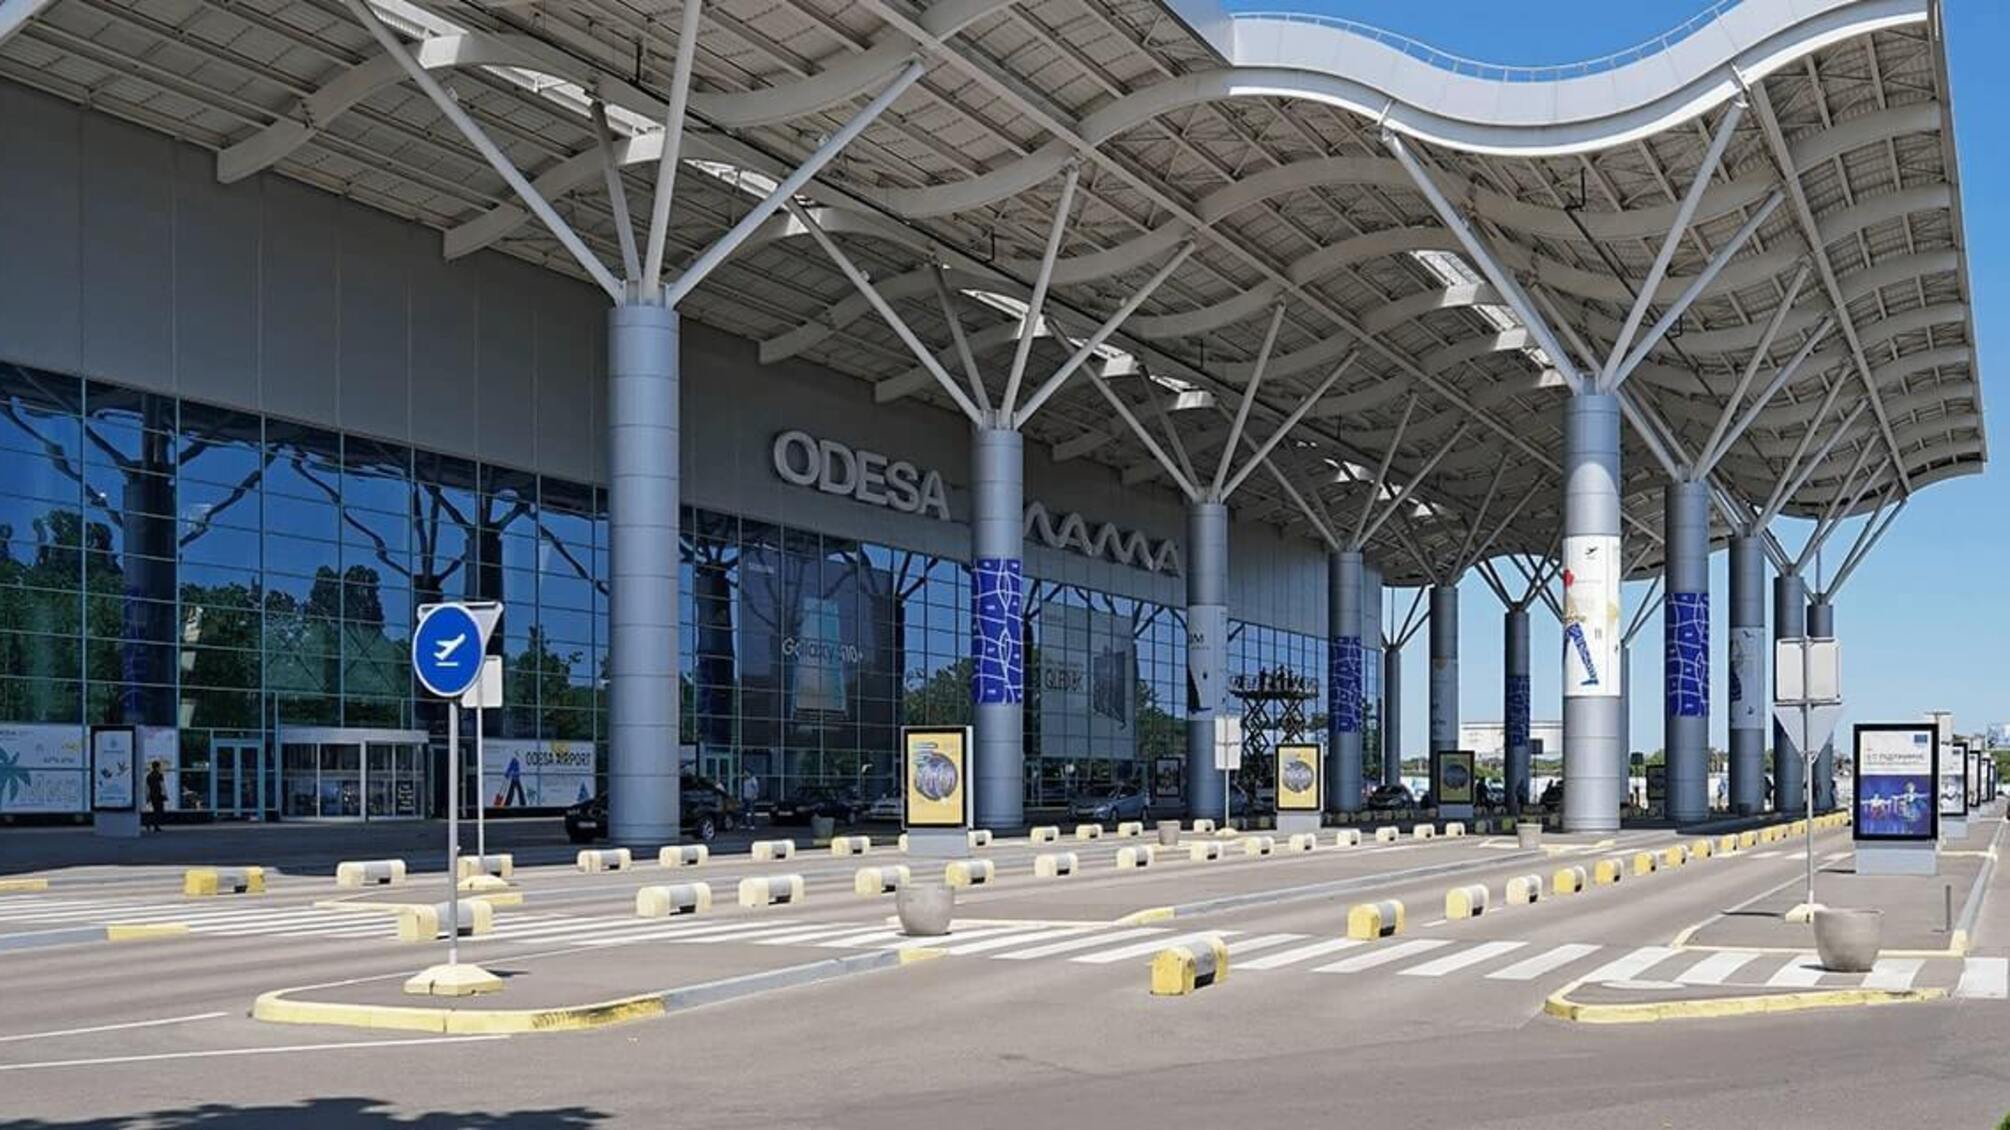 САП і НАБУ: мерія Одеси разом із бізнесменами привласнили аеропорт 'Одеса' і заклали його в банк